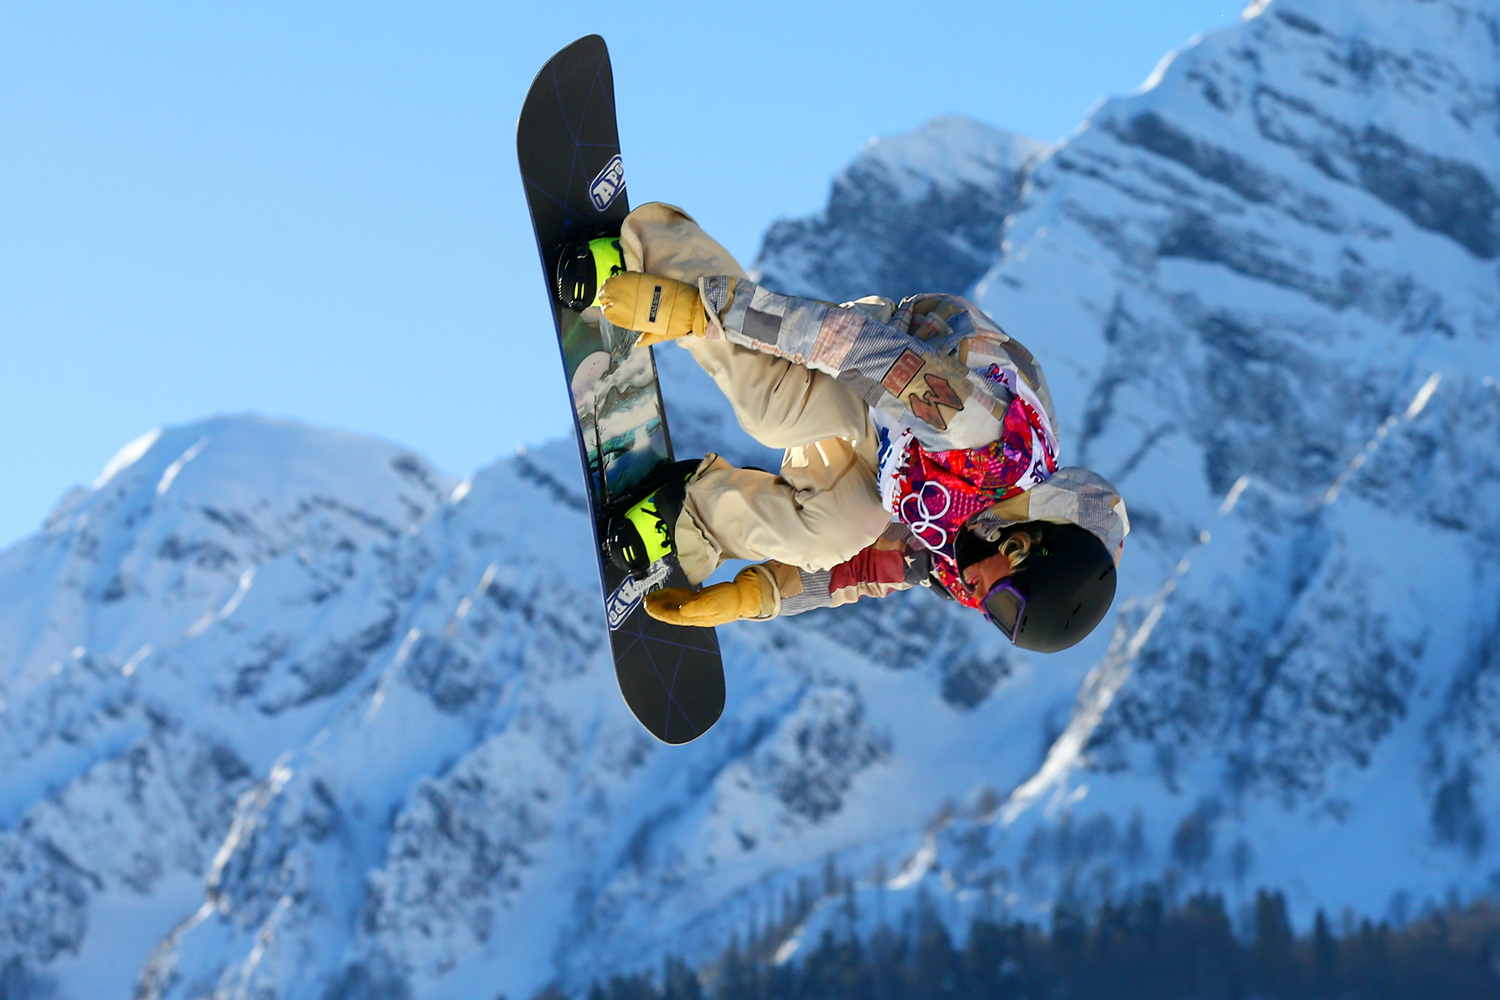 Sage Kotsenburg winnaar Slopestyle Sochi mannen Snowboard